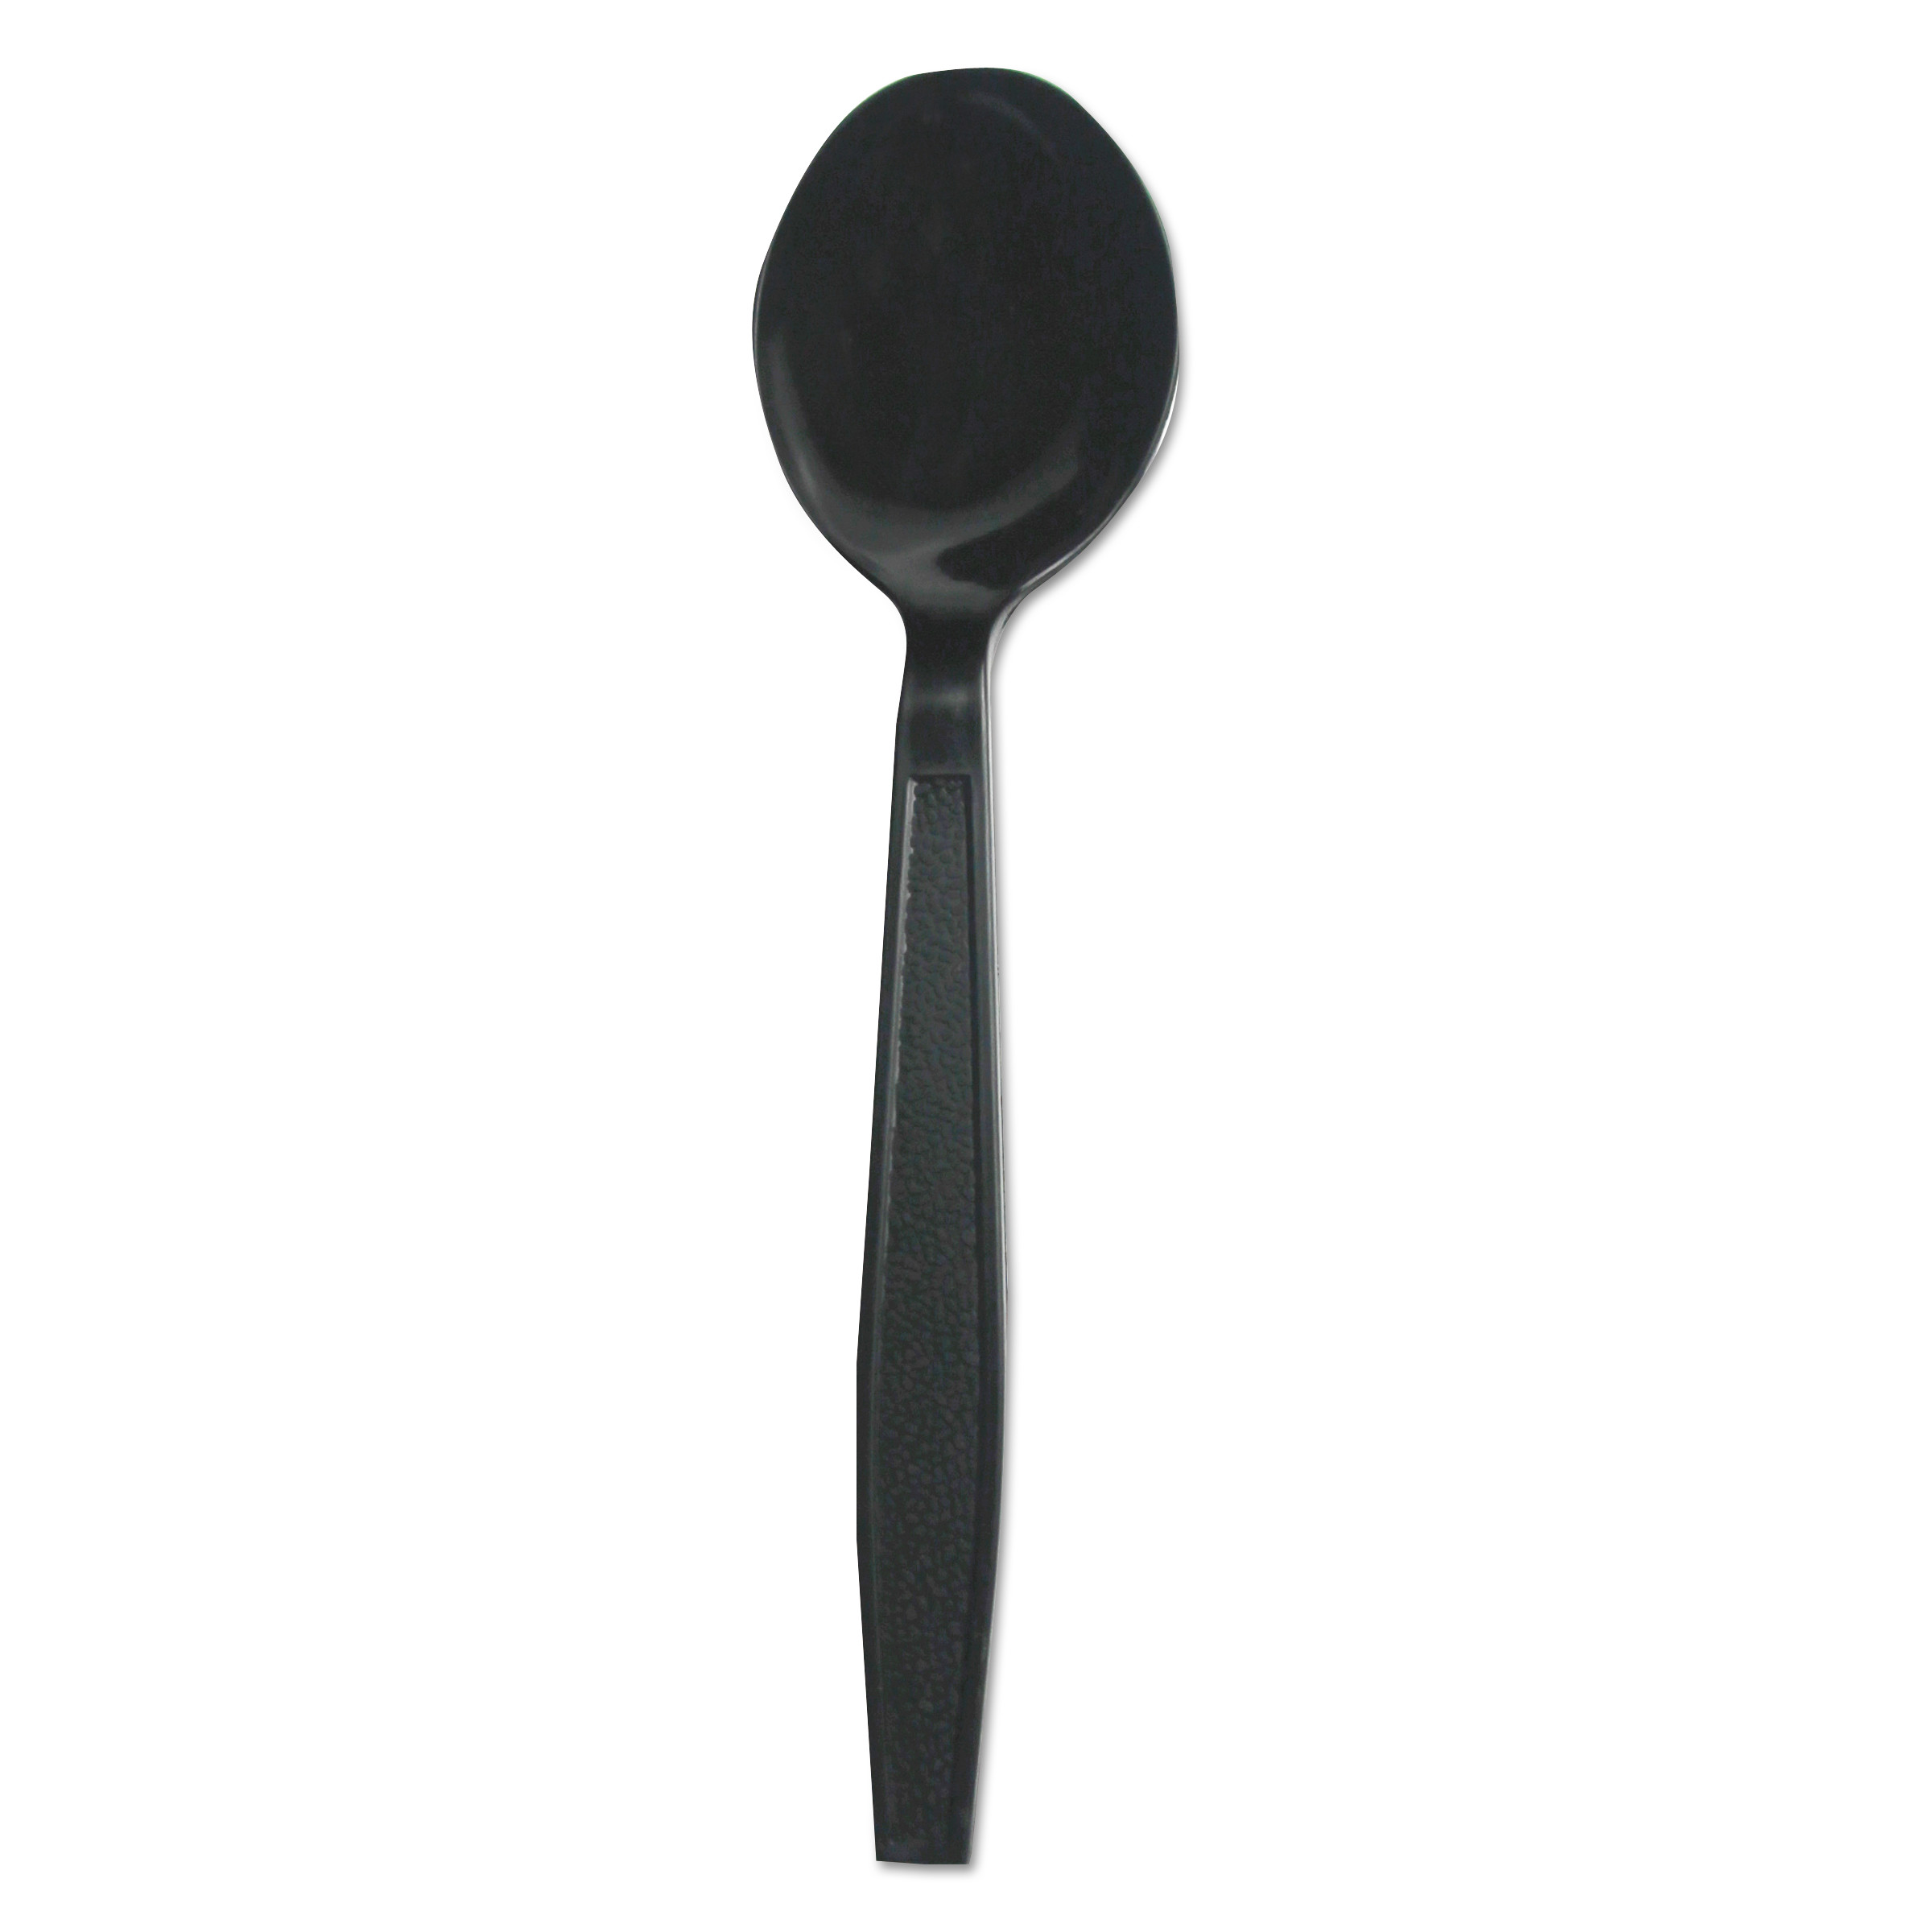  Boardwalk BWKSOUPHWPPBLA Heavyweight Polypropylene Cutlery, Soup Spoon, Black, 1000/Carton (BWKSOUPHWPPBLA) 